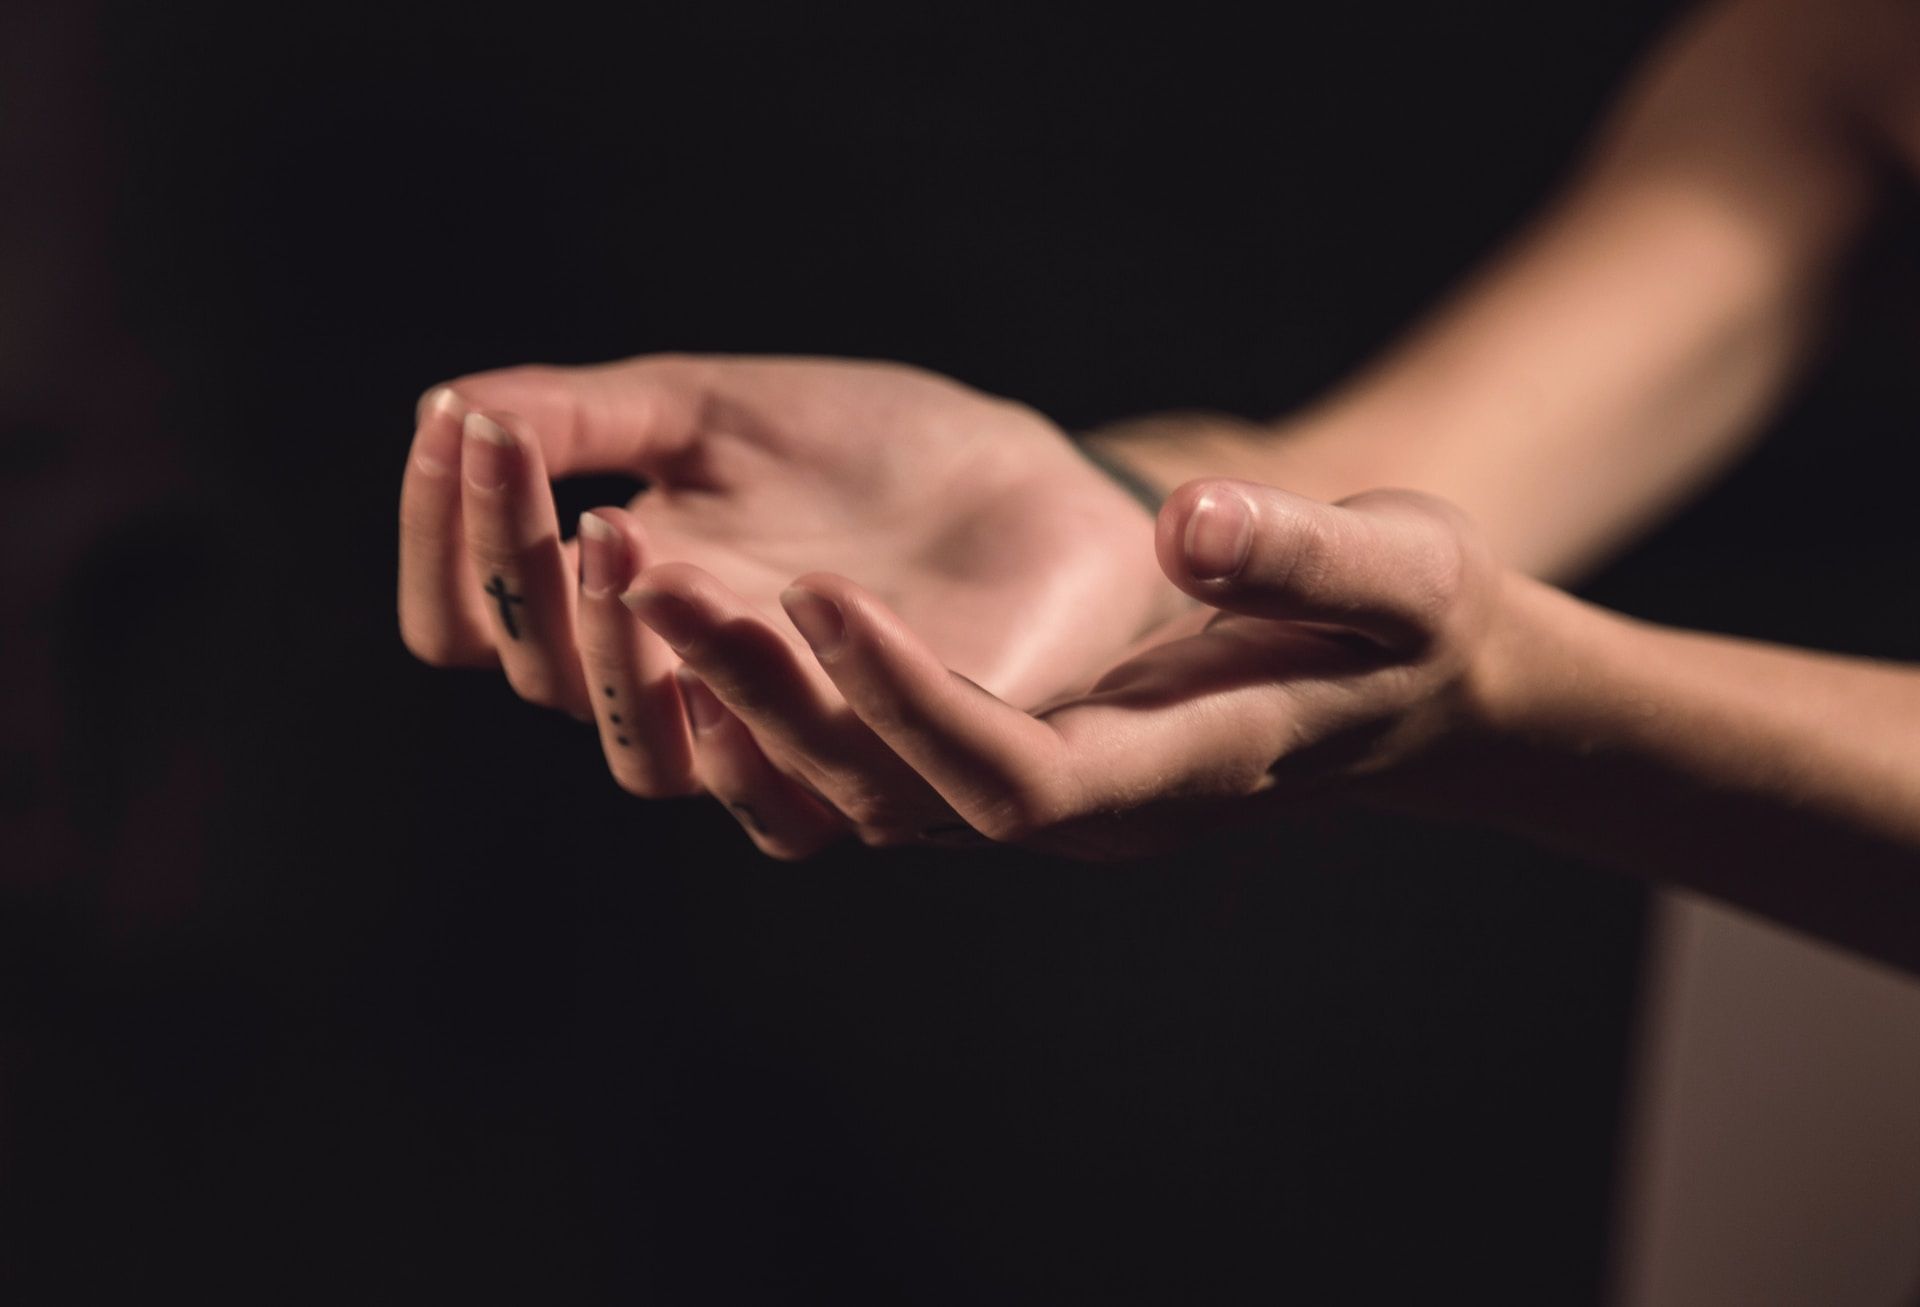 mains de femme dans un geste de réception - Photo by Milada Vigerova on https://unsplash.com/photos/iQWvVYMtv1k